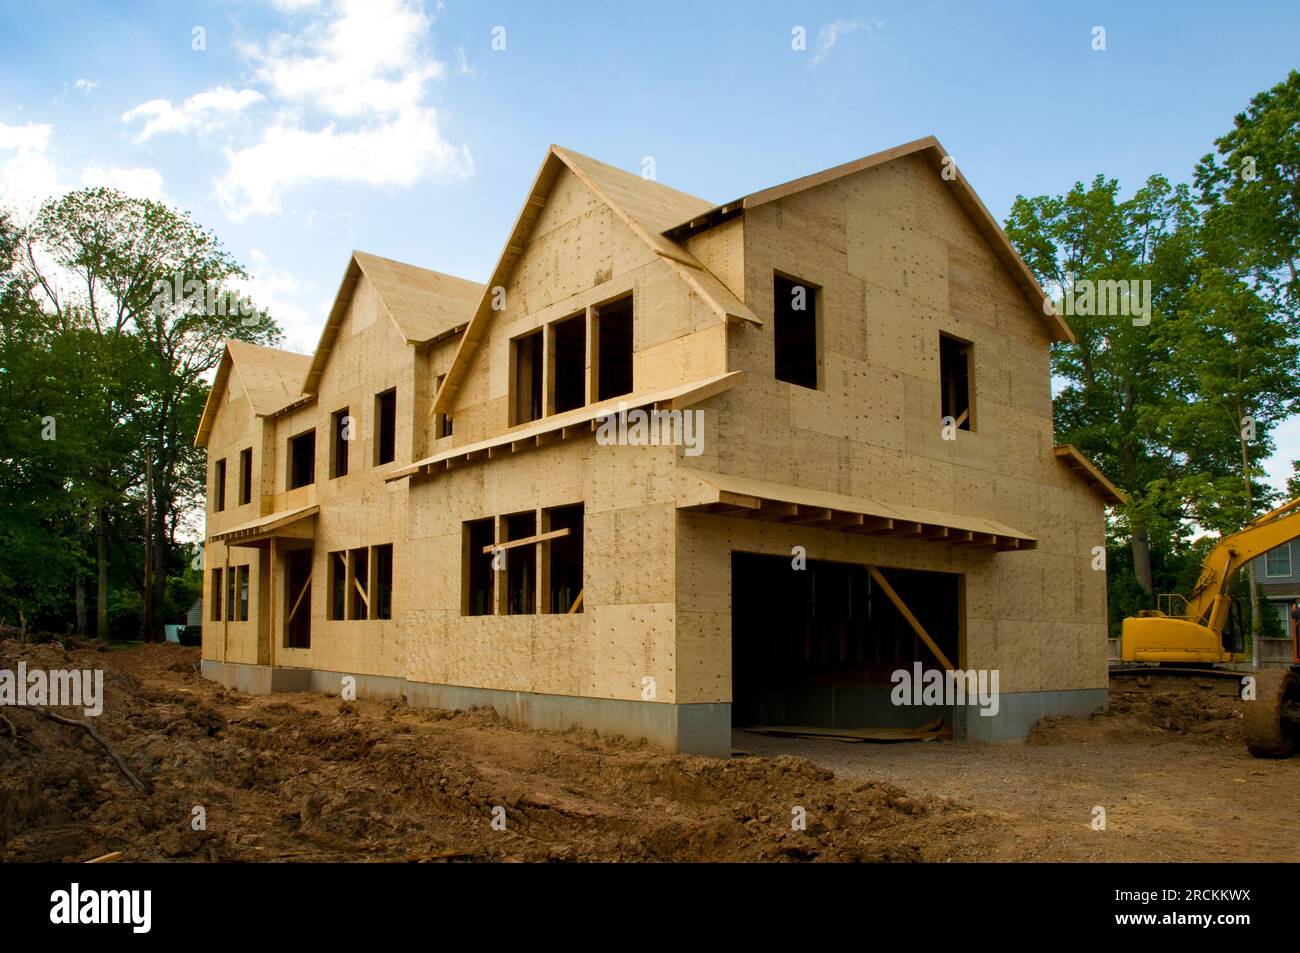 Large suburban house under construction in the sheathing phase. Stock Photo